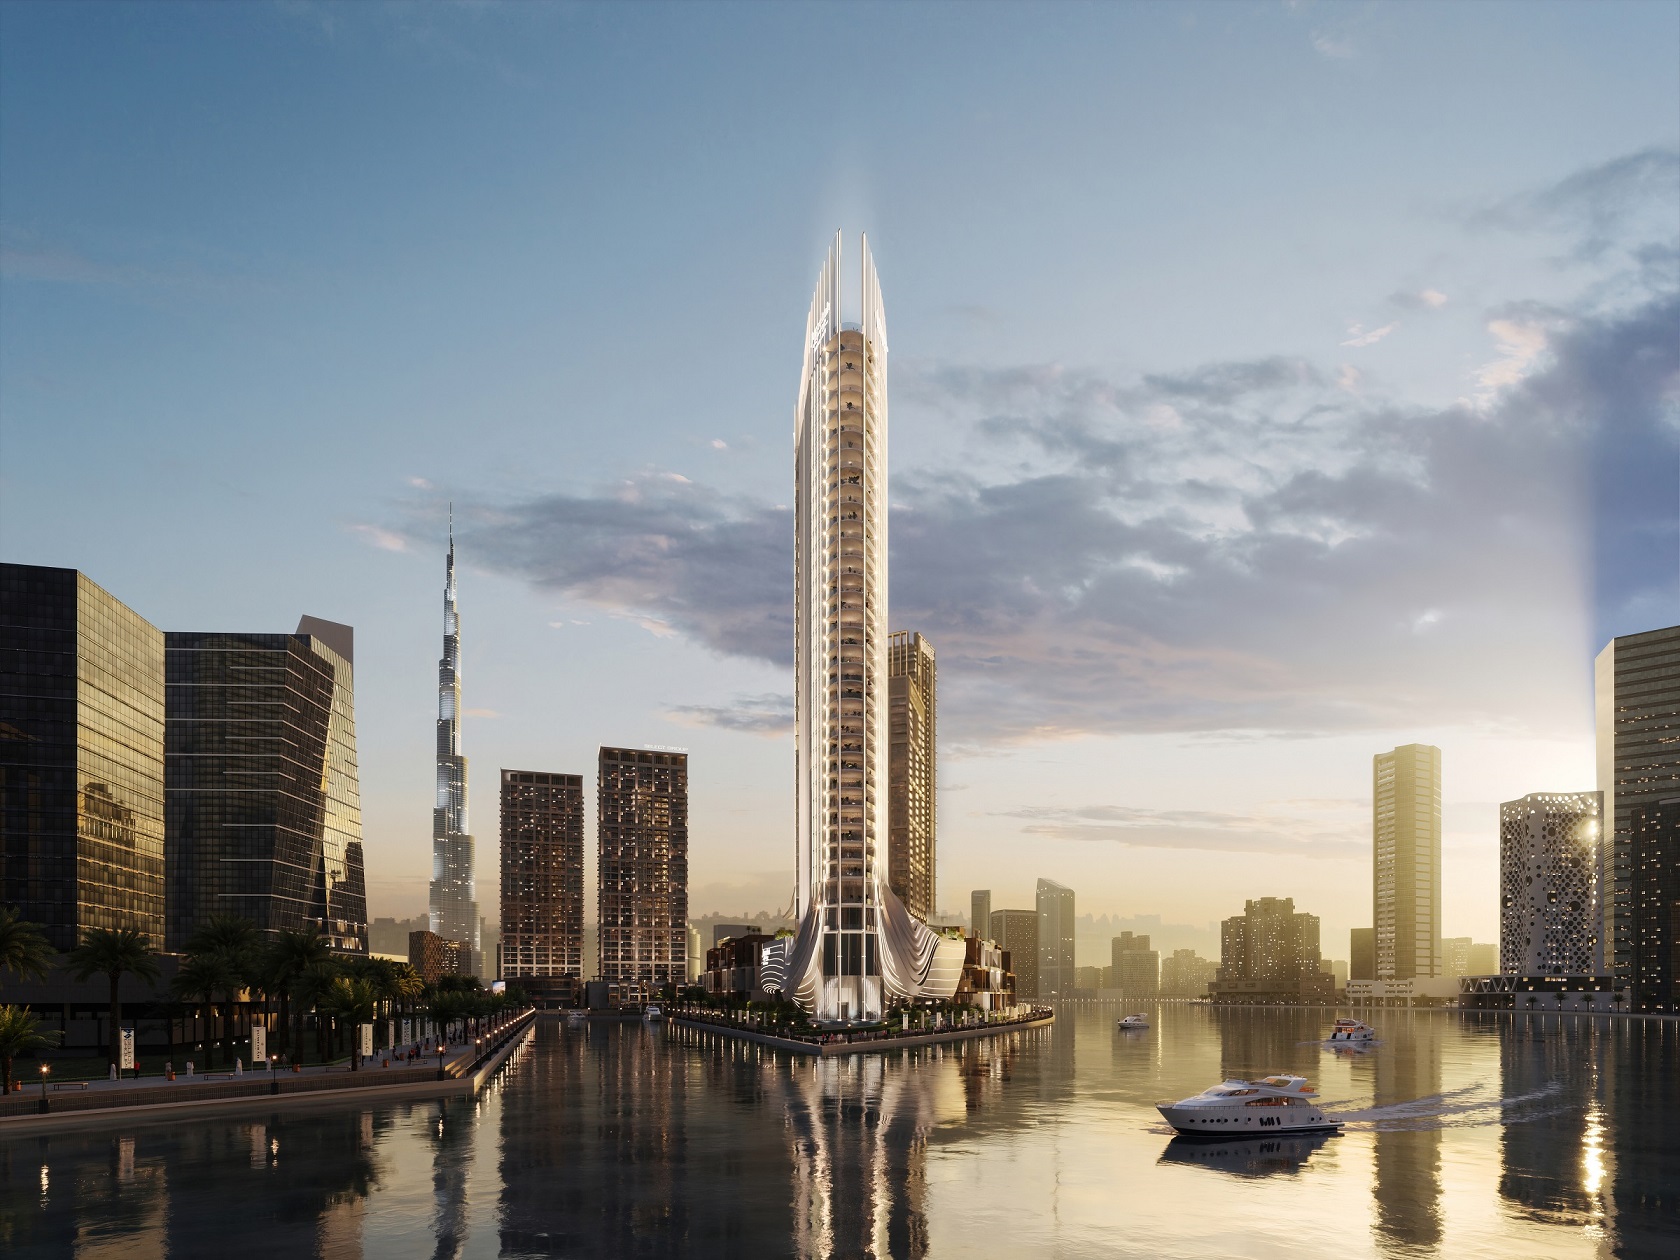 قريباً افتتاح برج جميرا ليفنج بيزنس باي في مشروع بيبينسولا